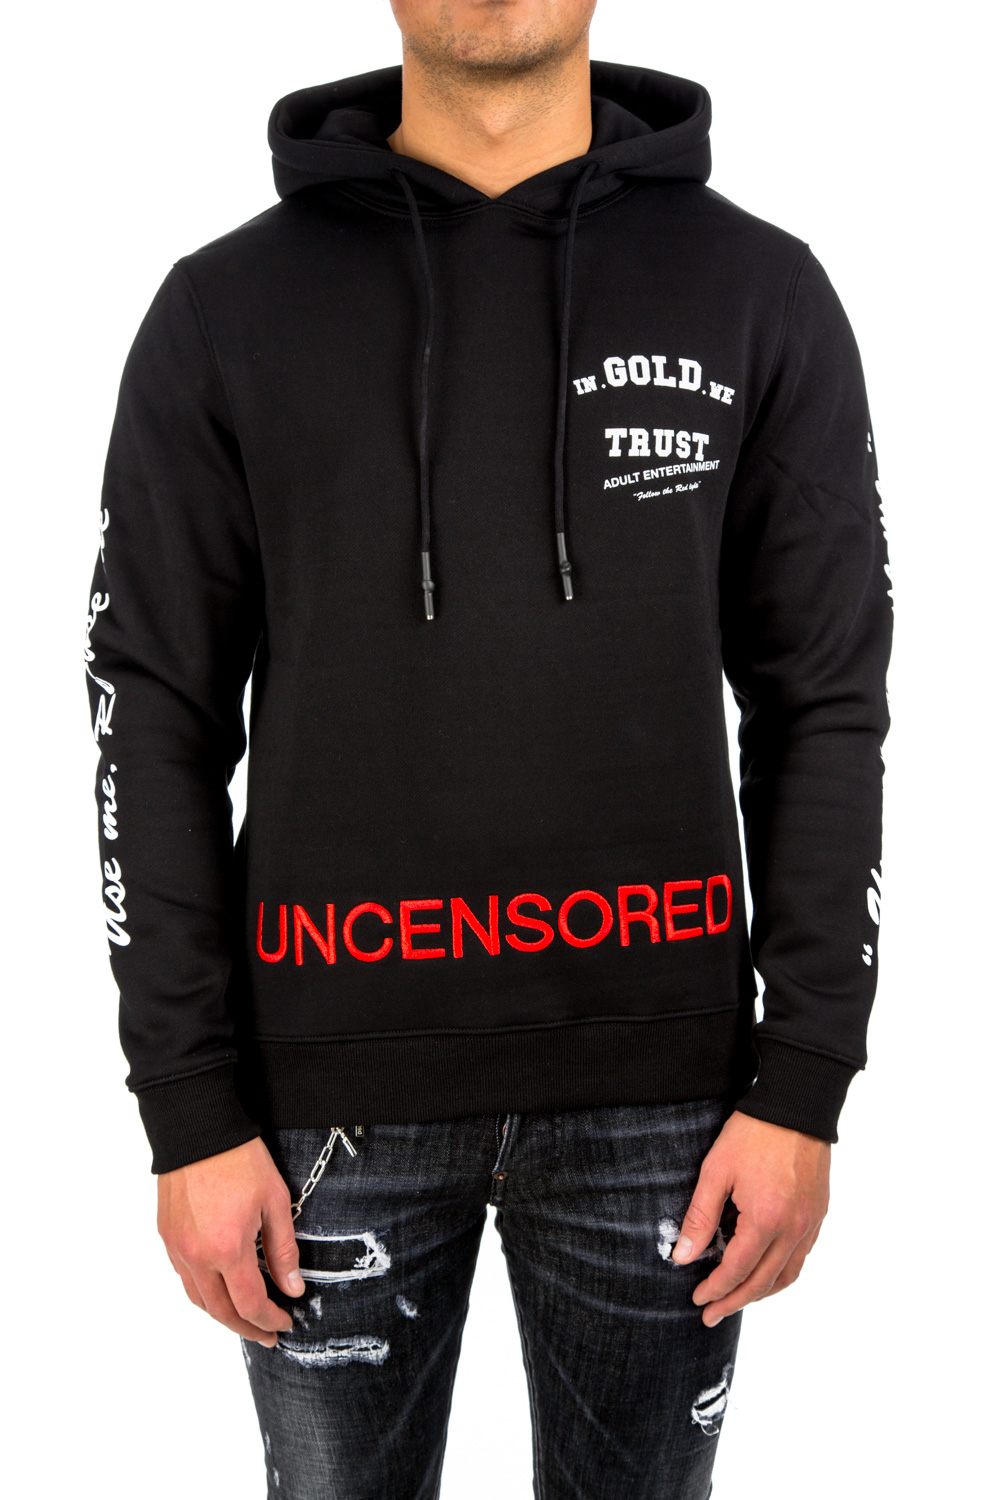 IN GOLD WE TRUST Uncensored Hoodie | Credomen